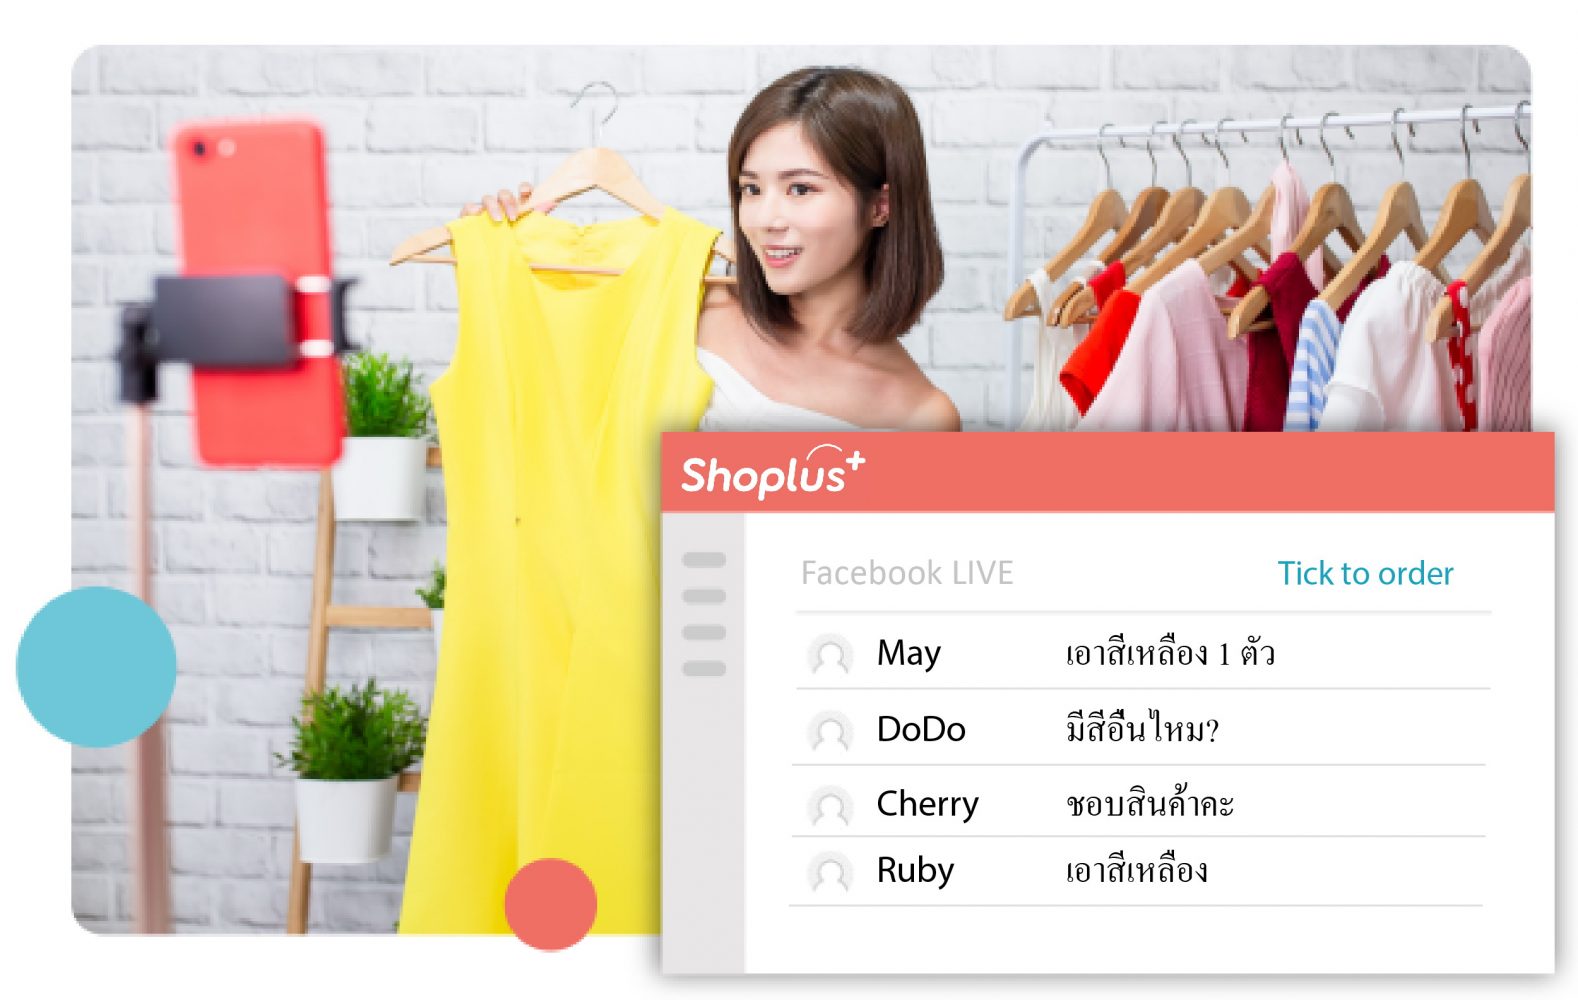 Shoplus ช่วยร้านค้าเพิ่มช่องทางขายออนไลน์ได้ทันใจ พร้อมกระตุ้นยอดขายช่วง COVID-19